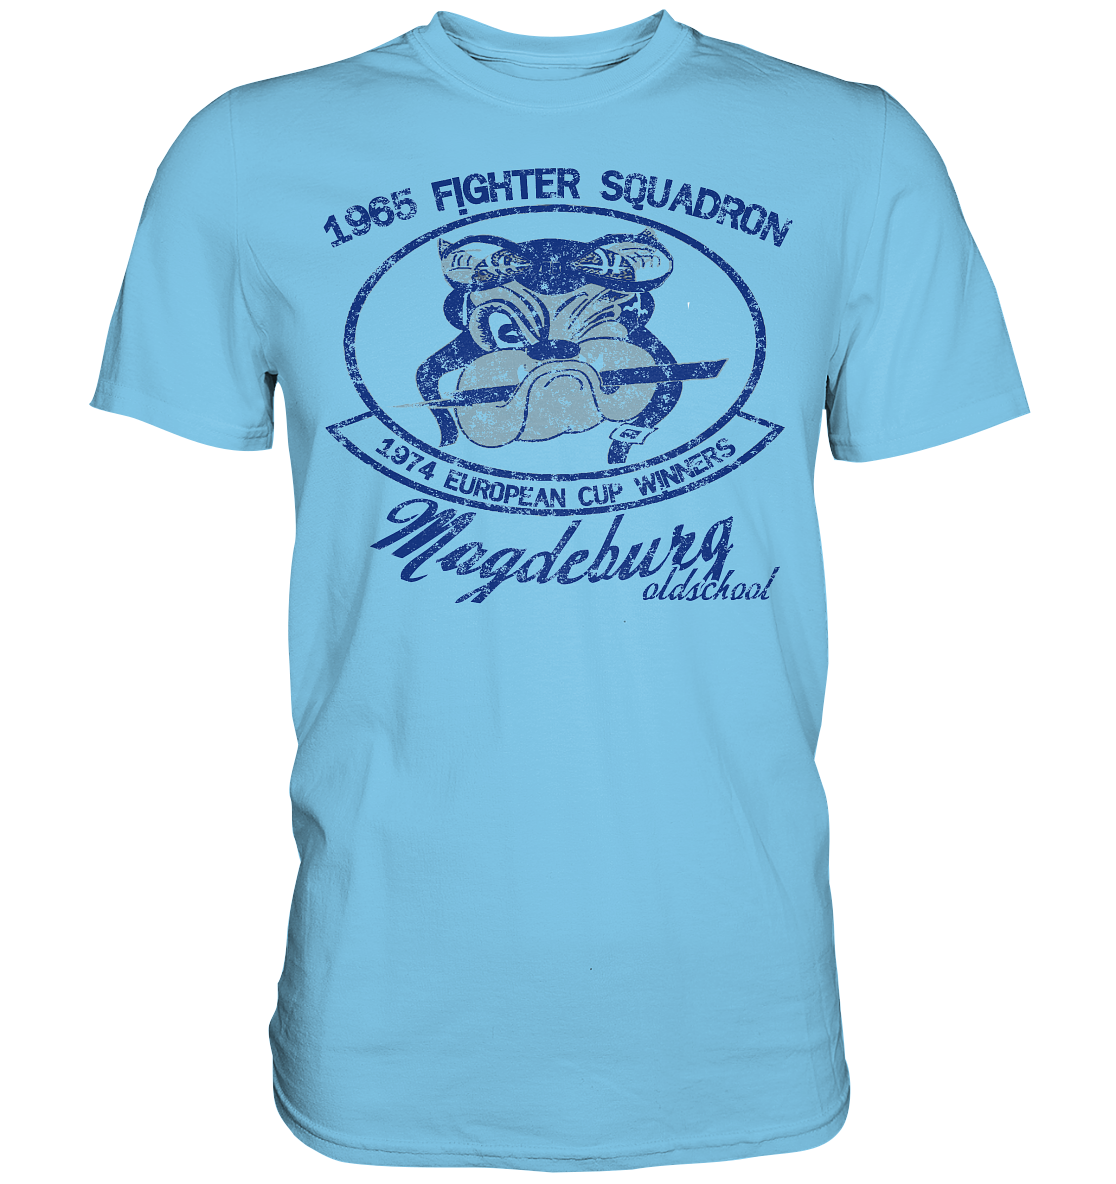 Fighter Squadron - Premium Shirt